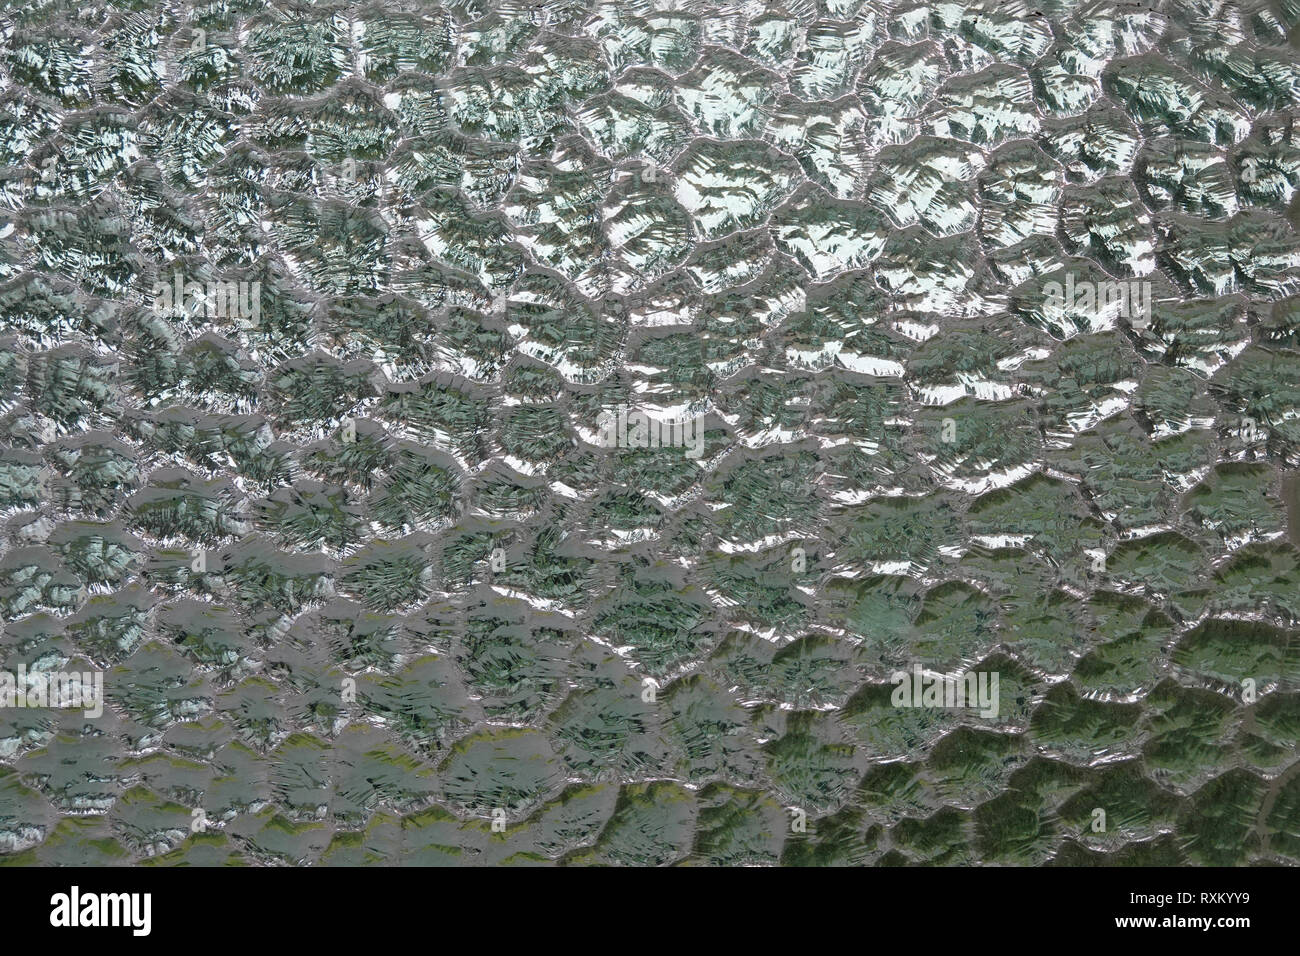 Grün und Weiß brilliert durch eine mattierte, texturierte Datenschutz Fenster, die eine abstrakte Darstellung eines zerbrochenen Glas Hintergrund gibt. Stockfoto